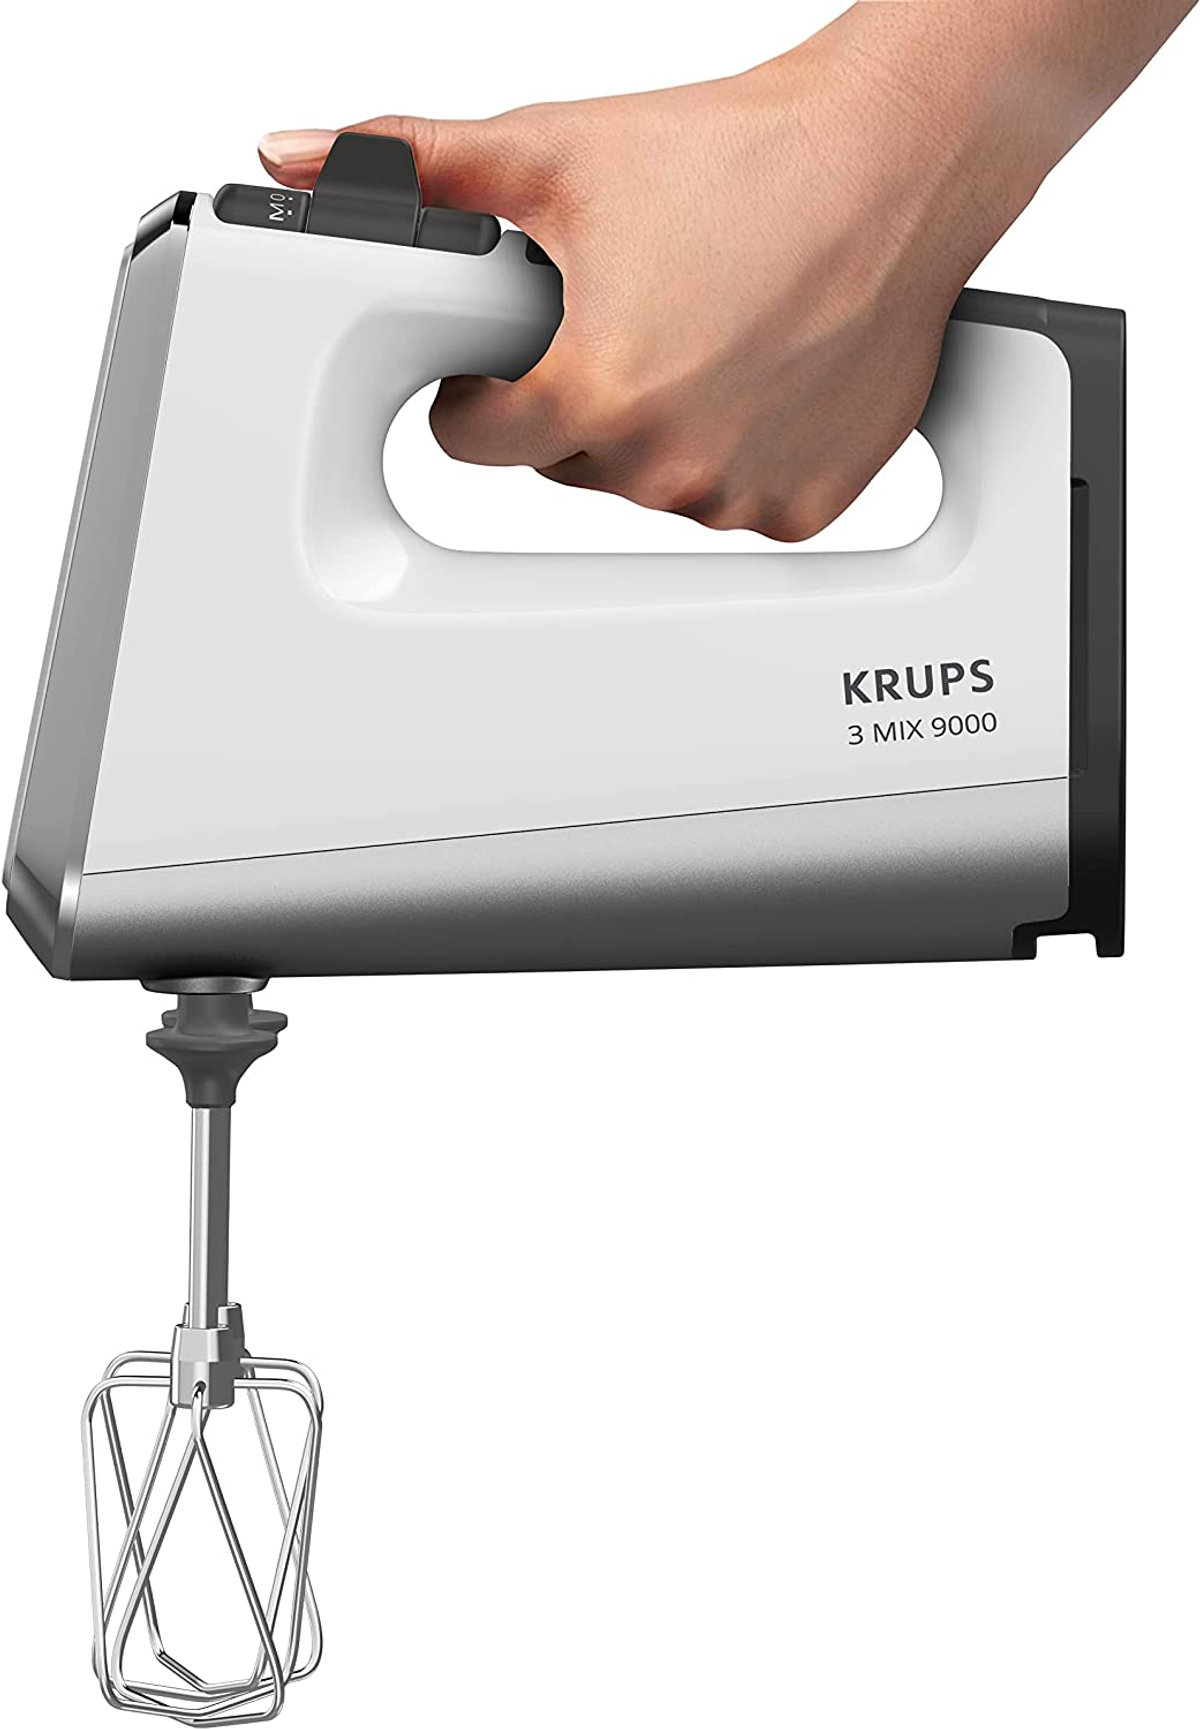 KRUPS GN9101 - 3 weiss Mix 9000 (750 Watt) Handmixer